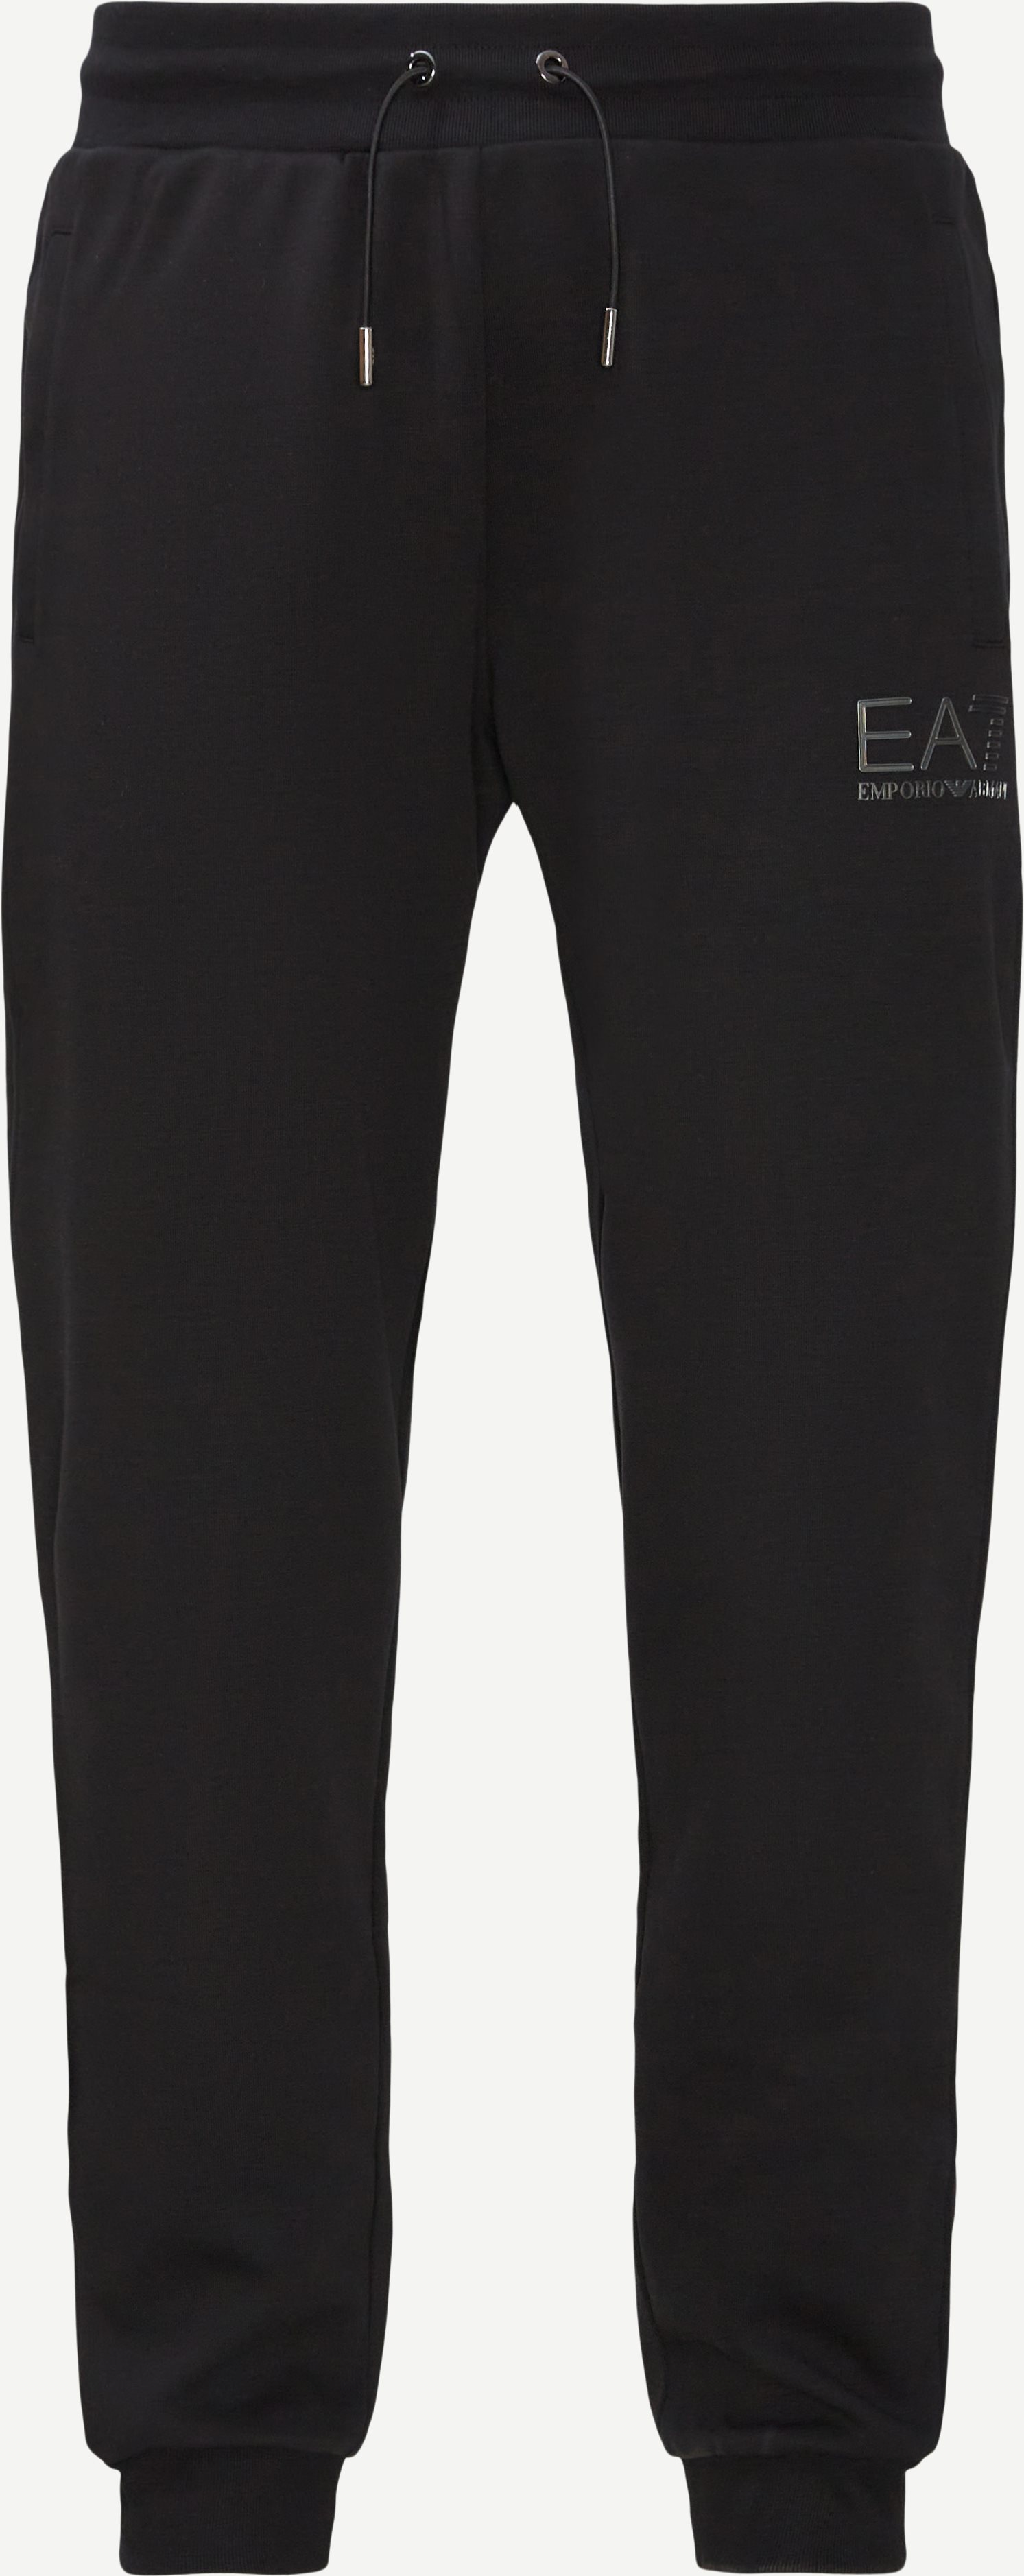 6LLP78 Sweatpants - Bukser - Regular fit - Sort